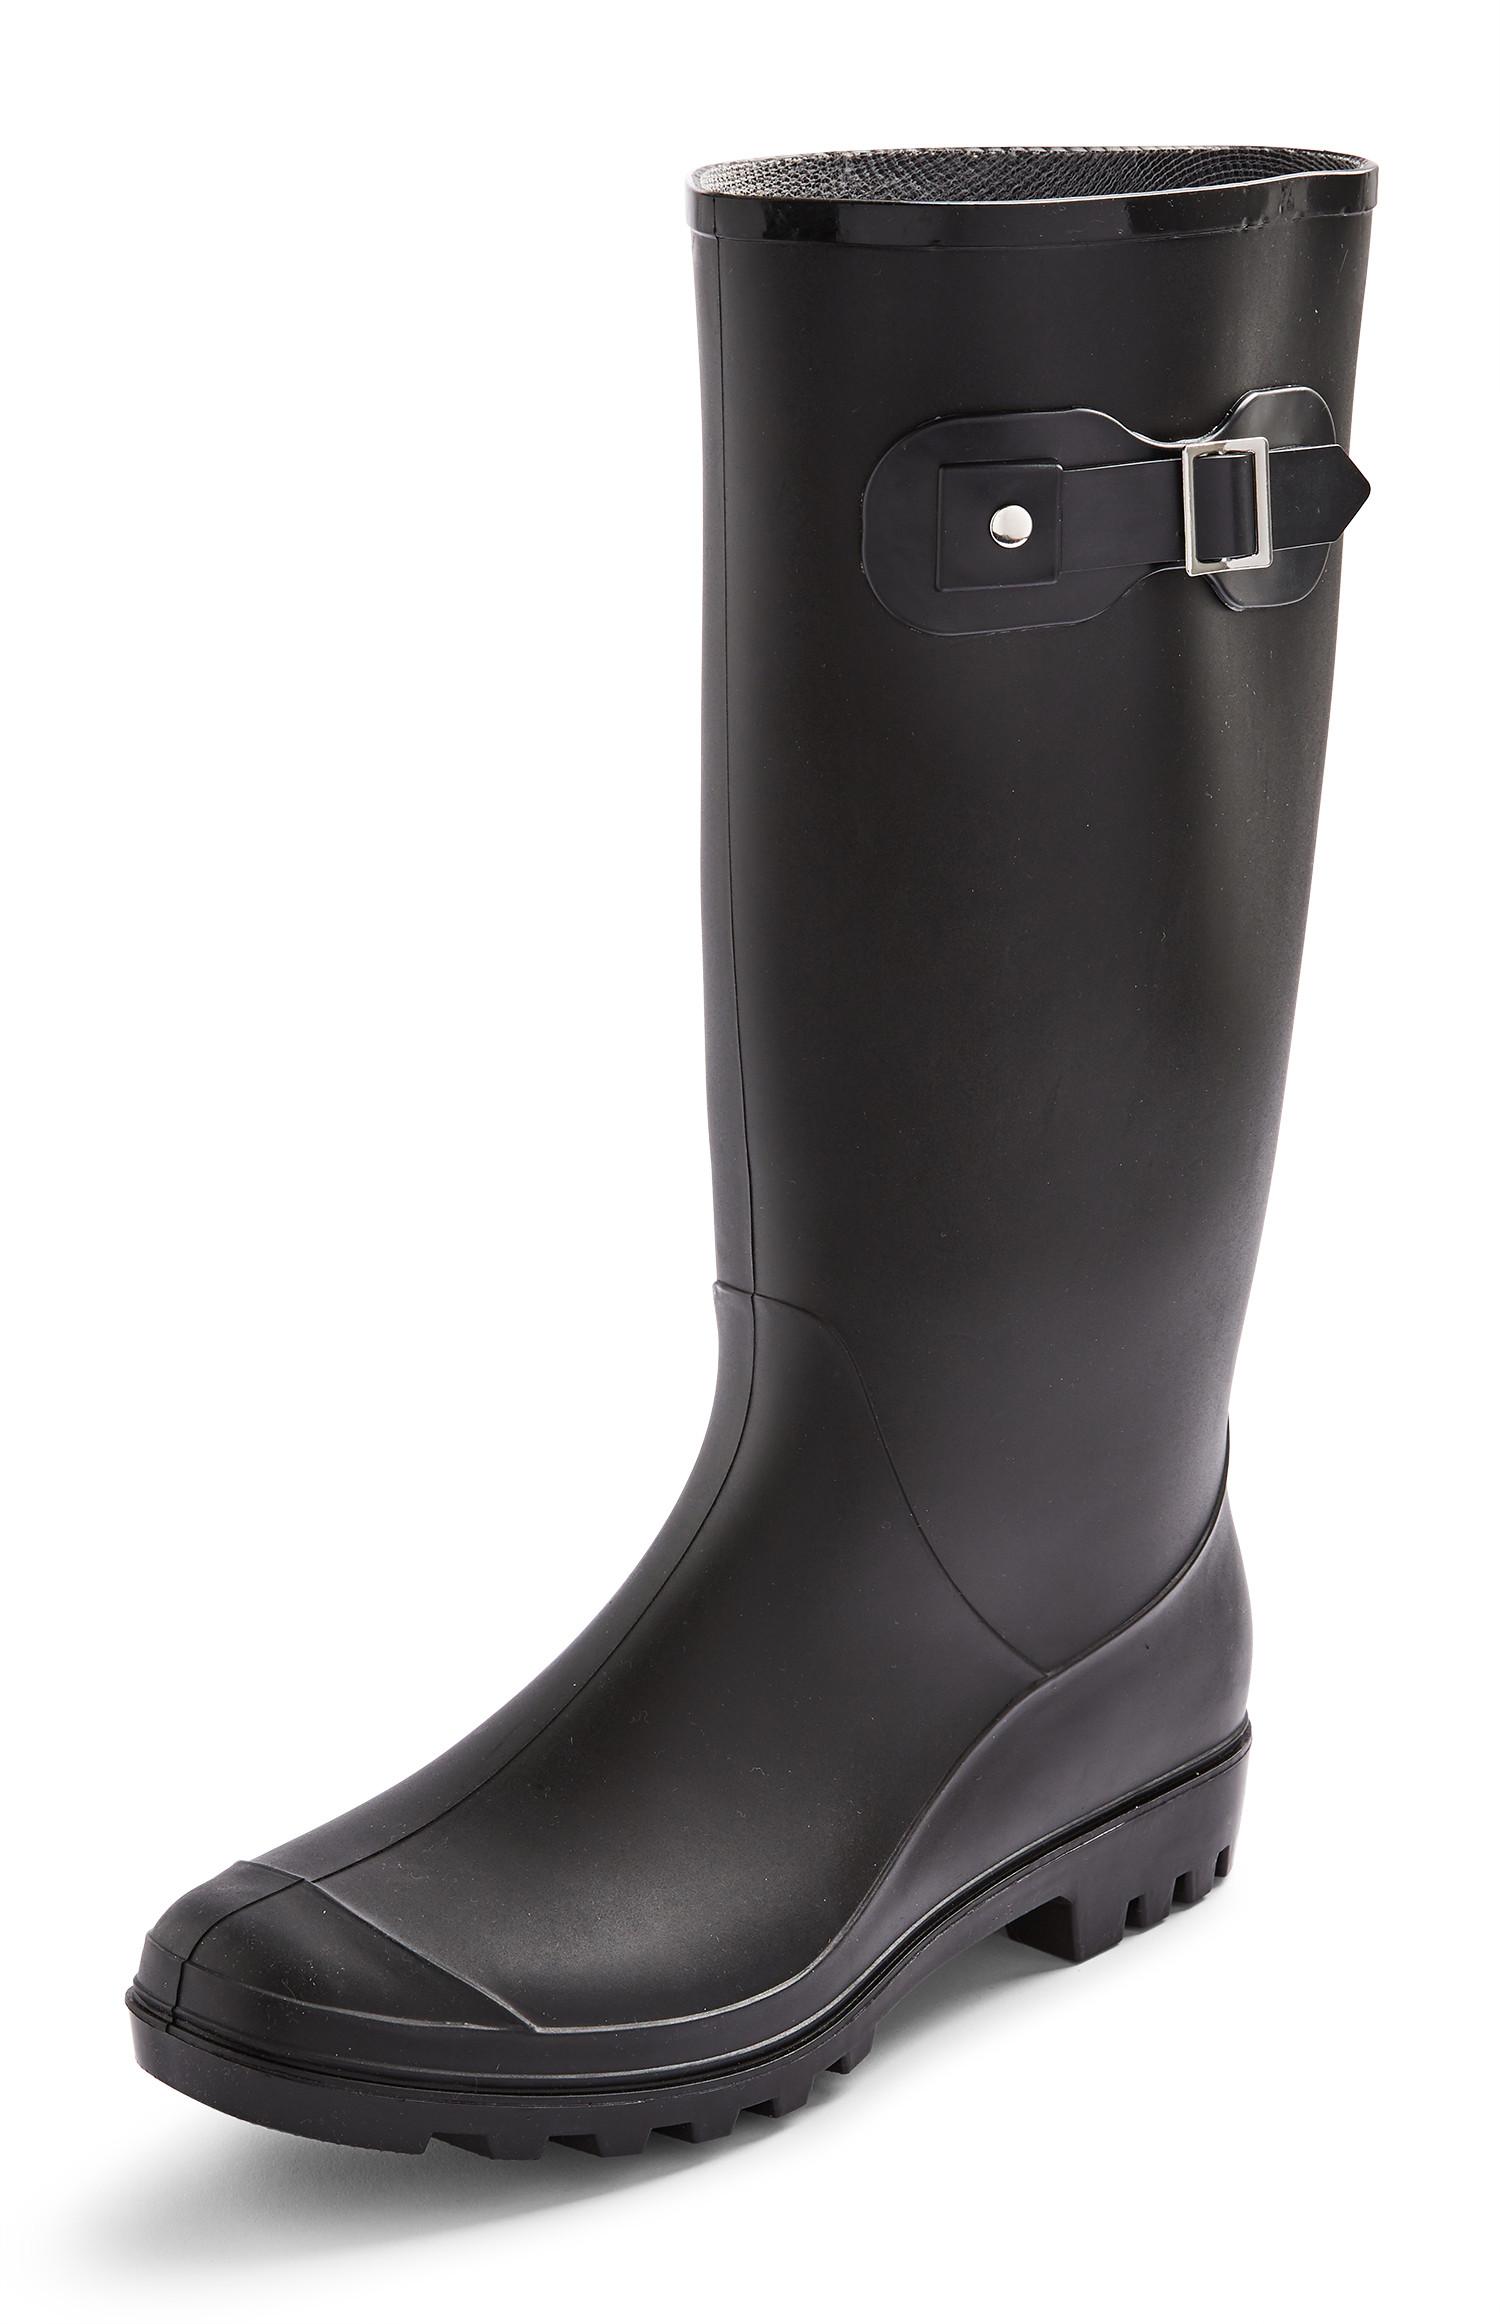 Black Buckle Wellington Boots | Women's Boots | Women's Shoes & Boots ...